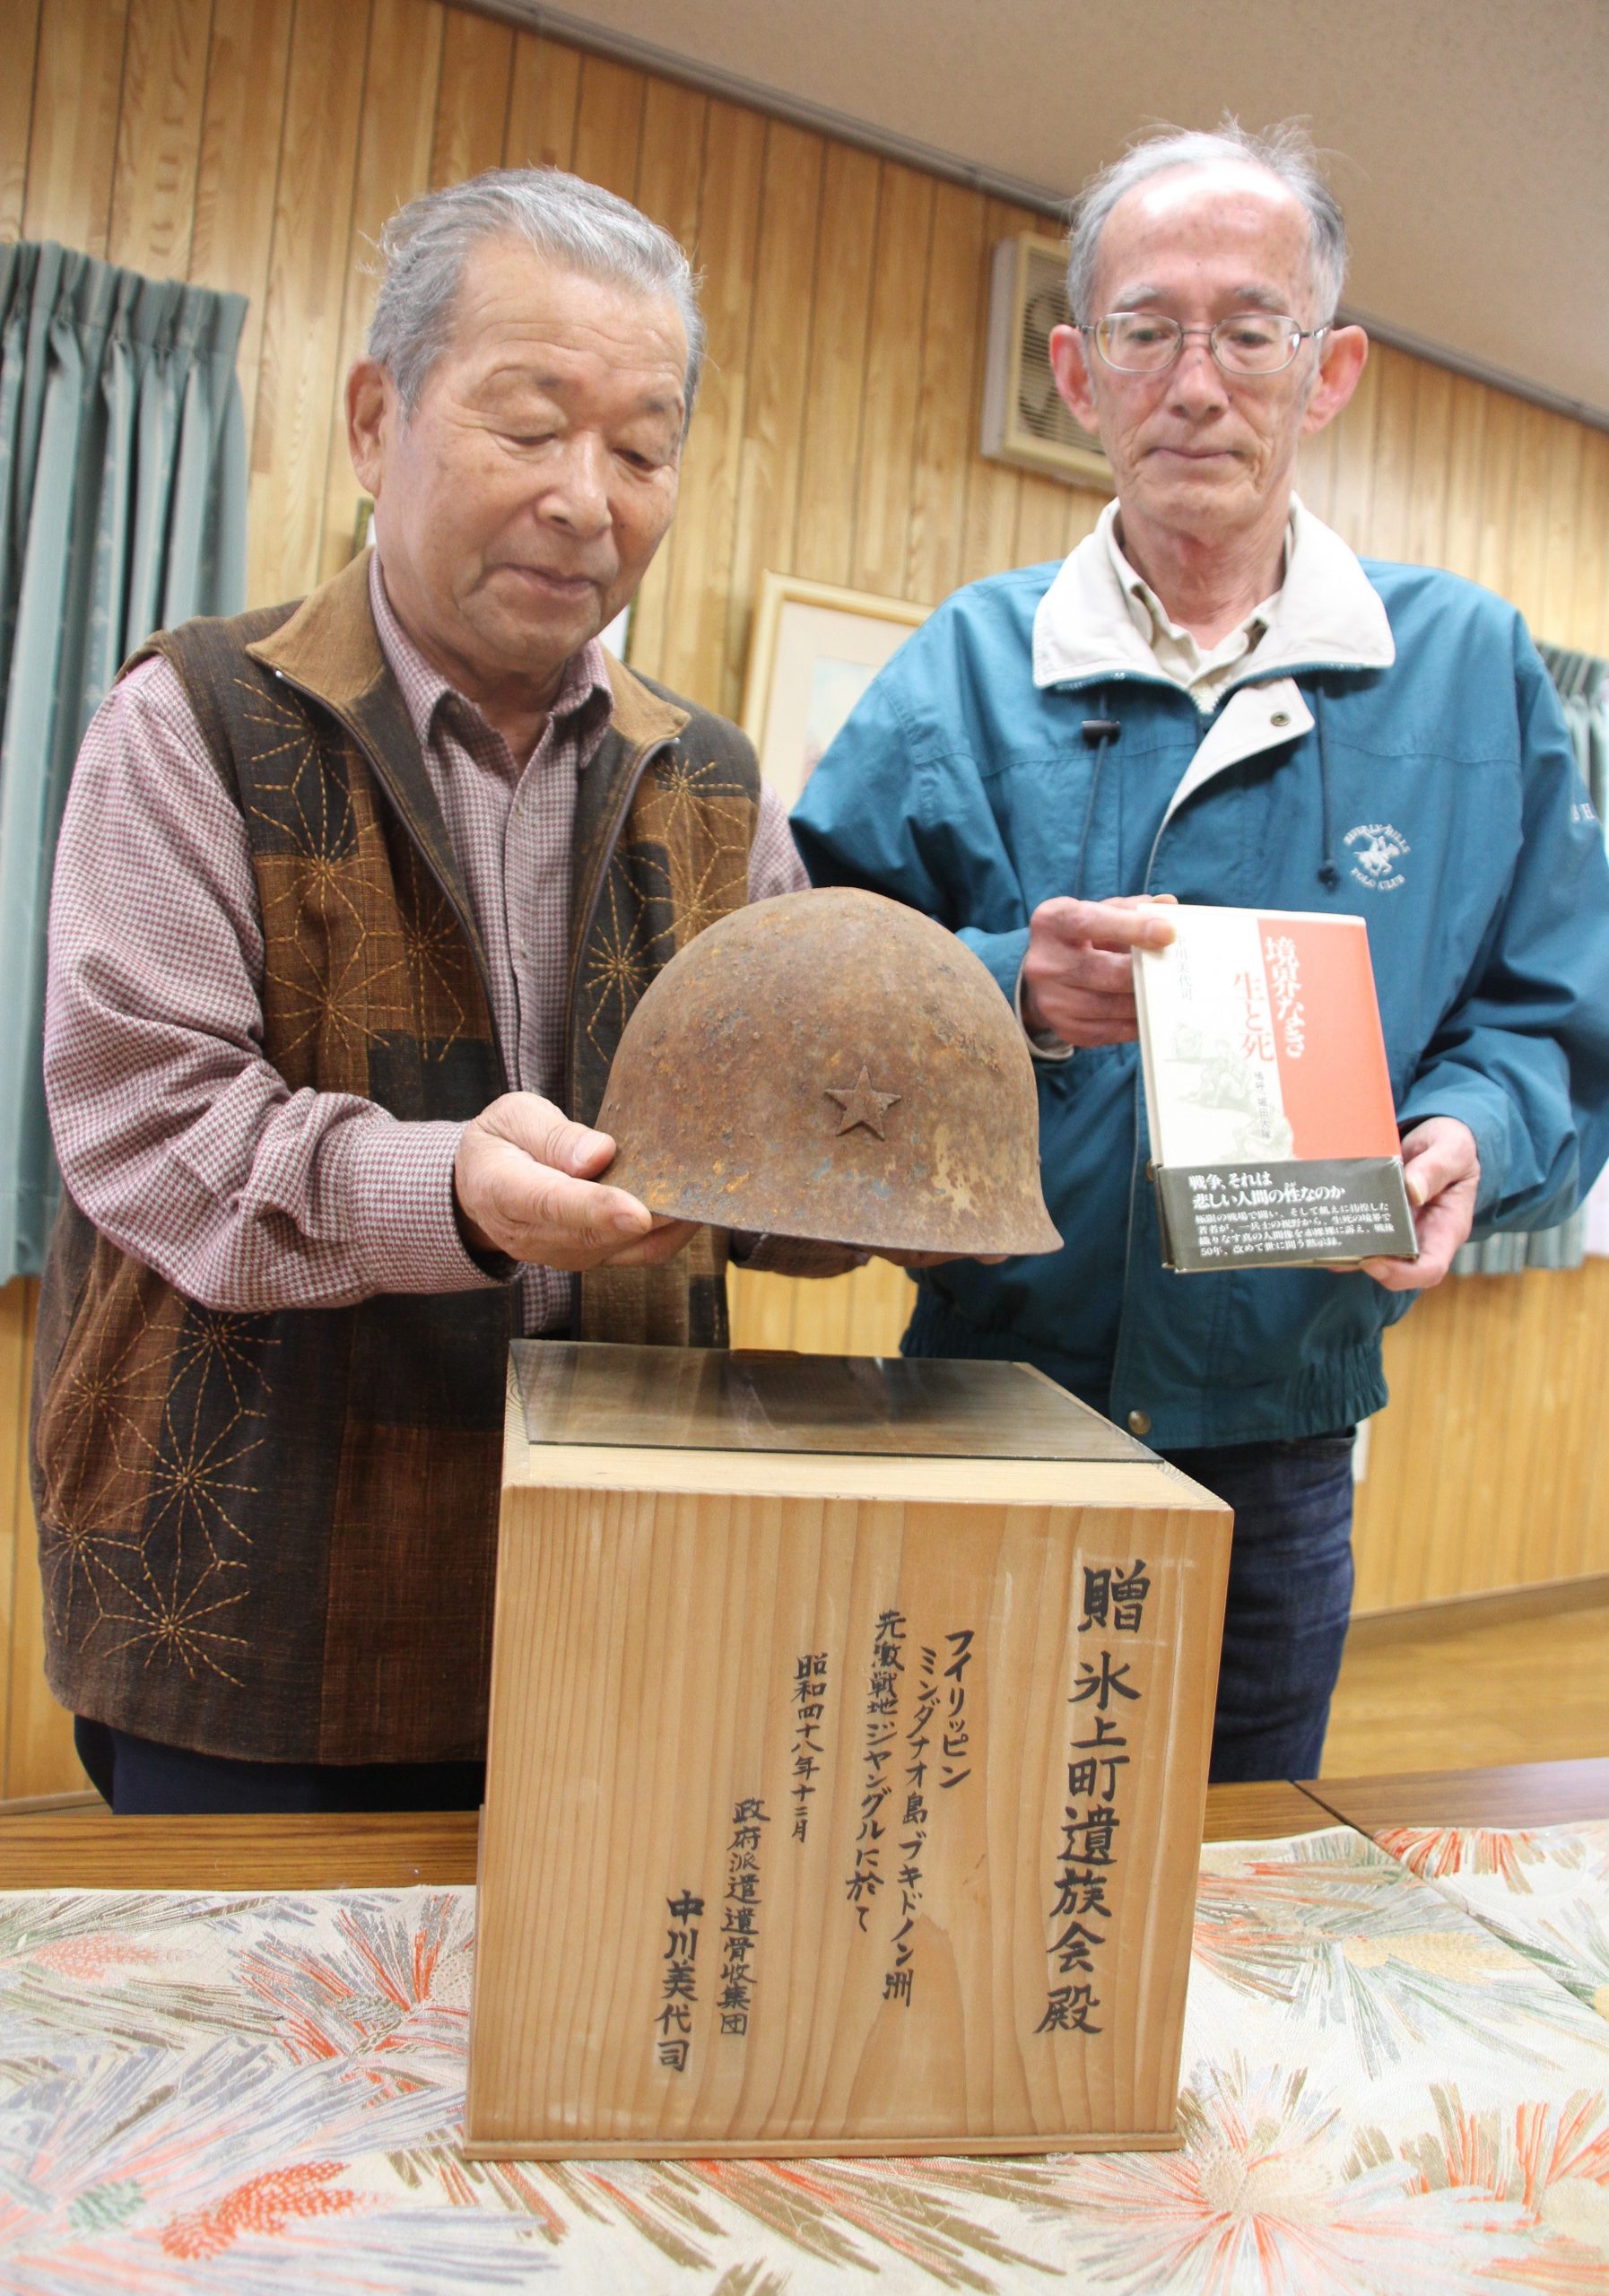 激戦地の陸軍鉄兜を寄贈へ 元日本兵がミンダナオで収集 戦争の悲惨さを後世に 丹波新聞